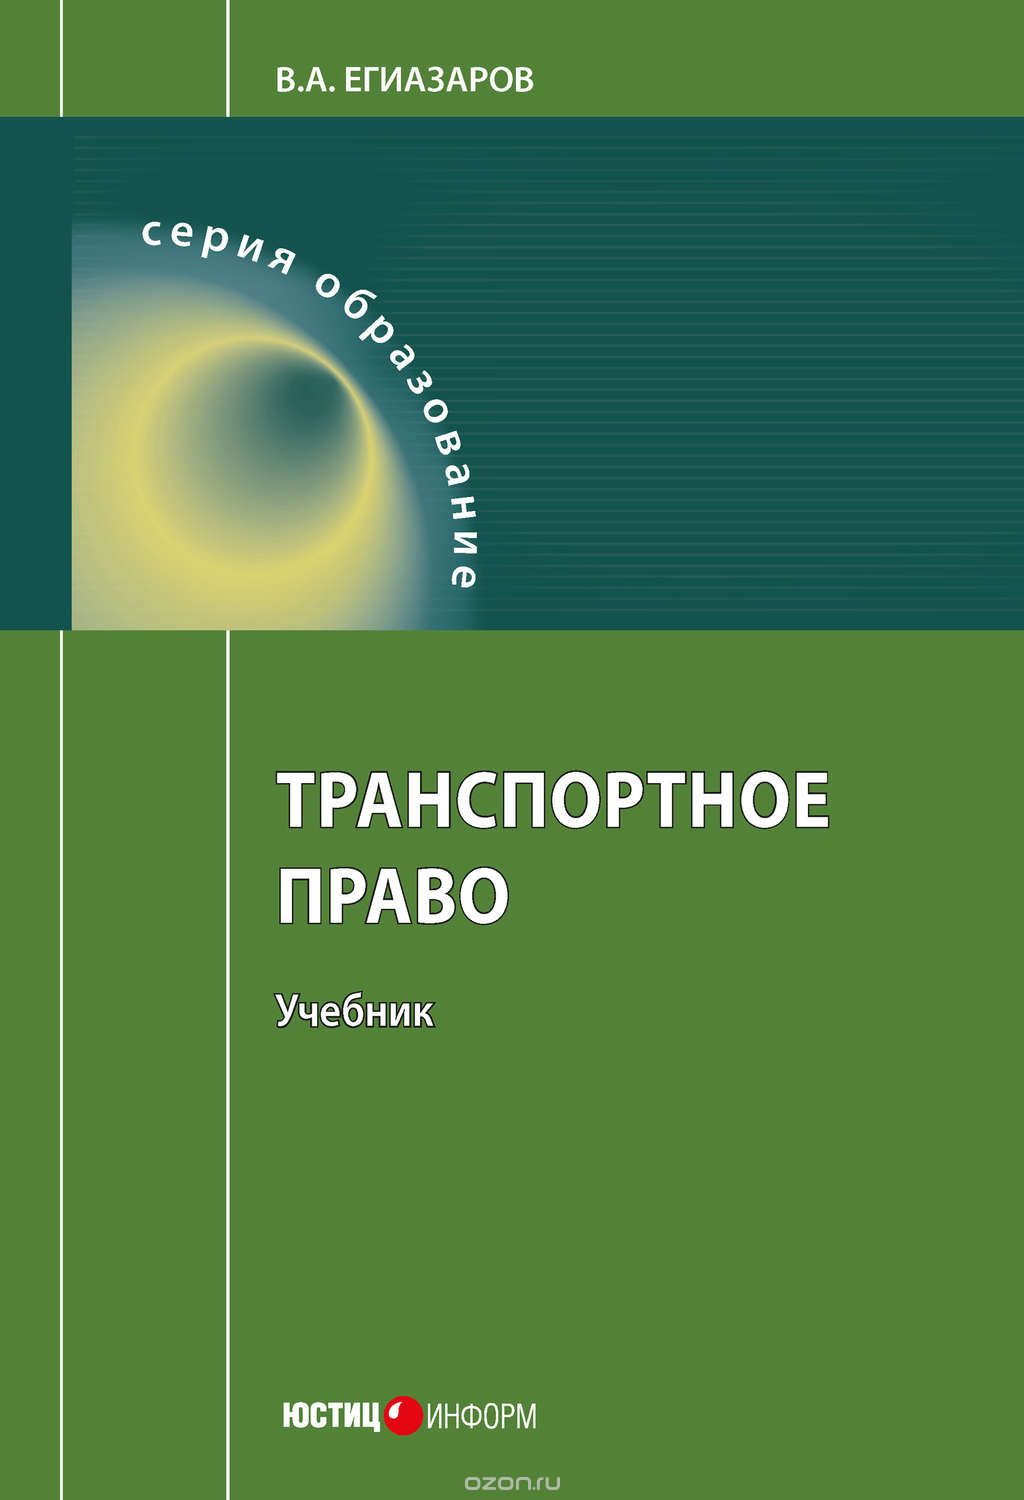 Скачать книгу "Транспортное право, Егиазаров Владимир Абрамович"